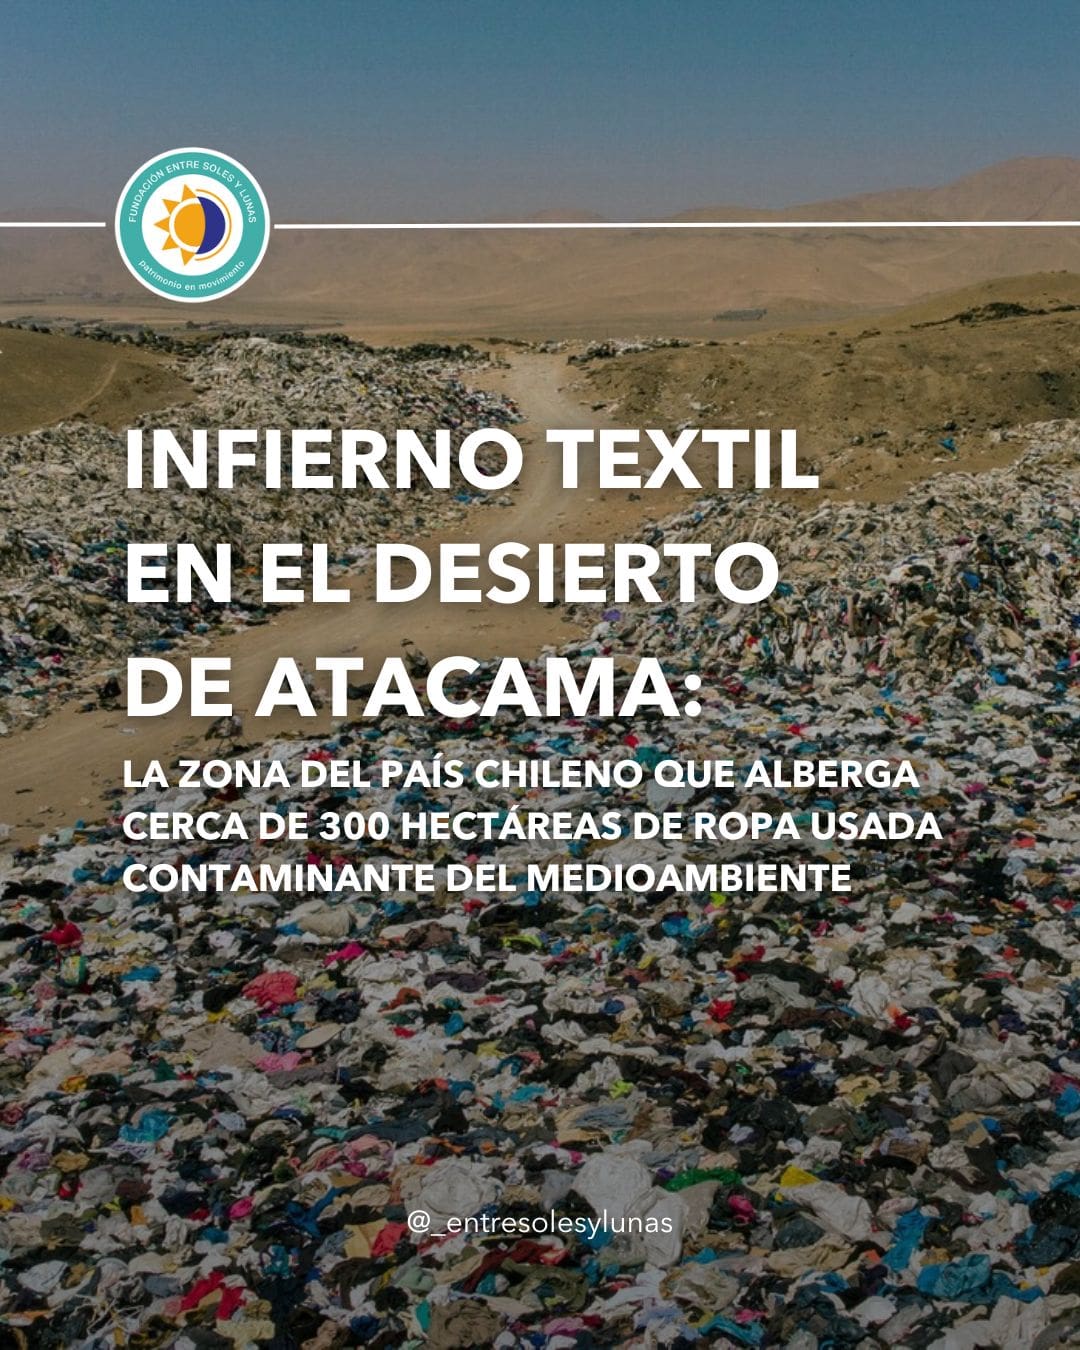 El desierto de Atacama: Locación en donde continúan alojándose toneladas de ropa